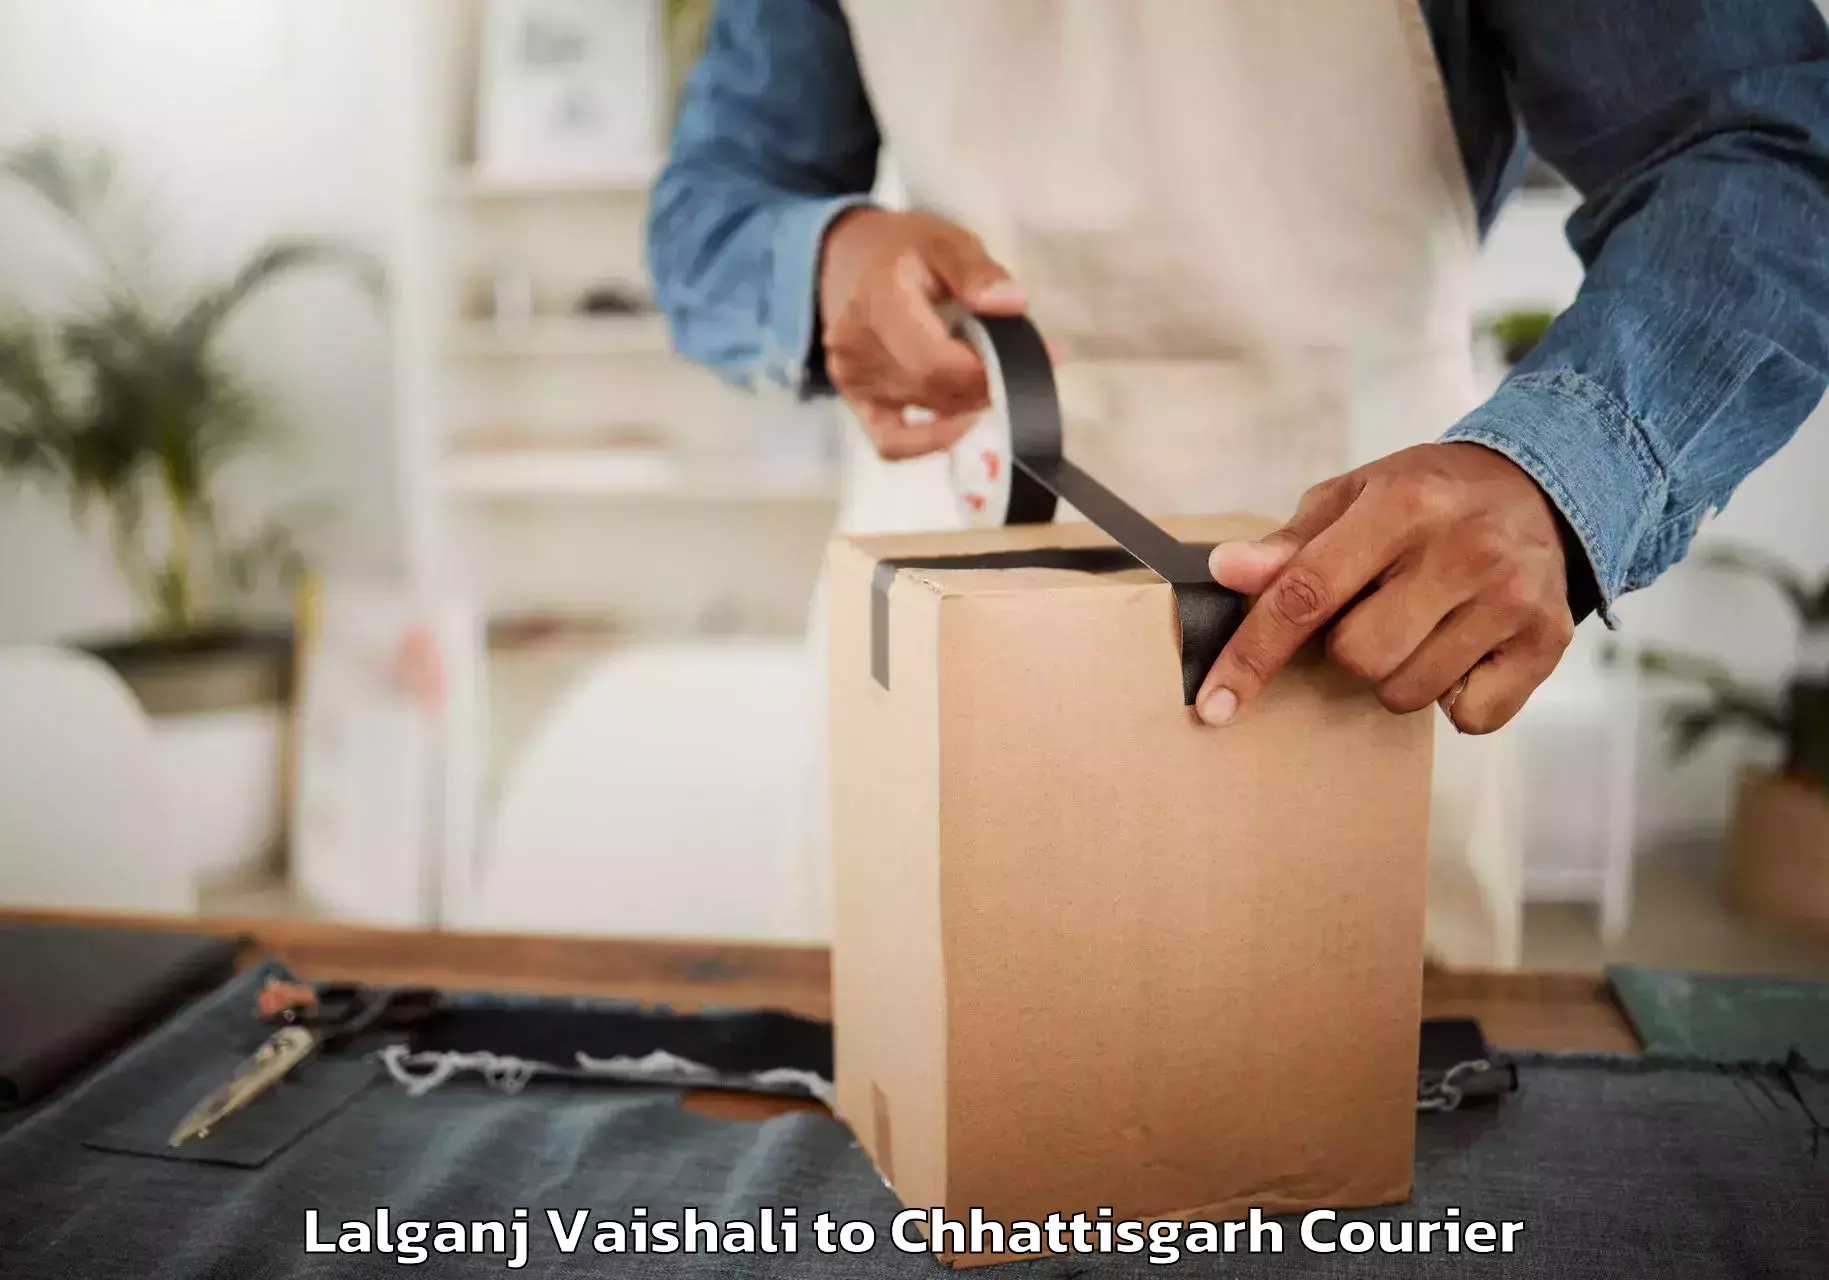 Residential furniture transport Lalganj Vaishali to Raigarh Chhattisgarh